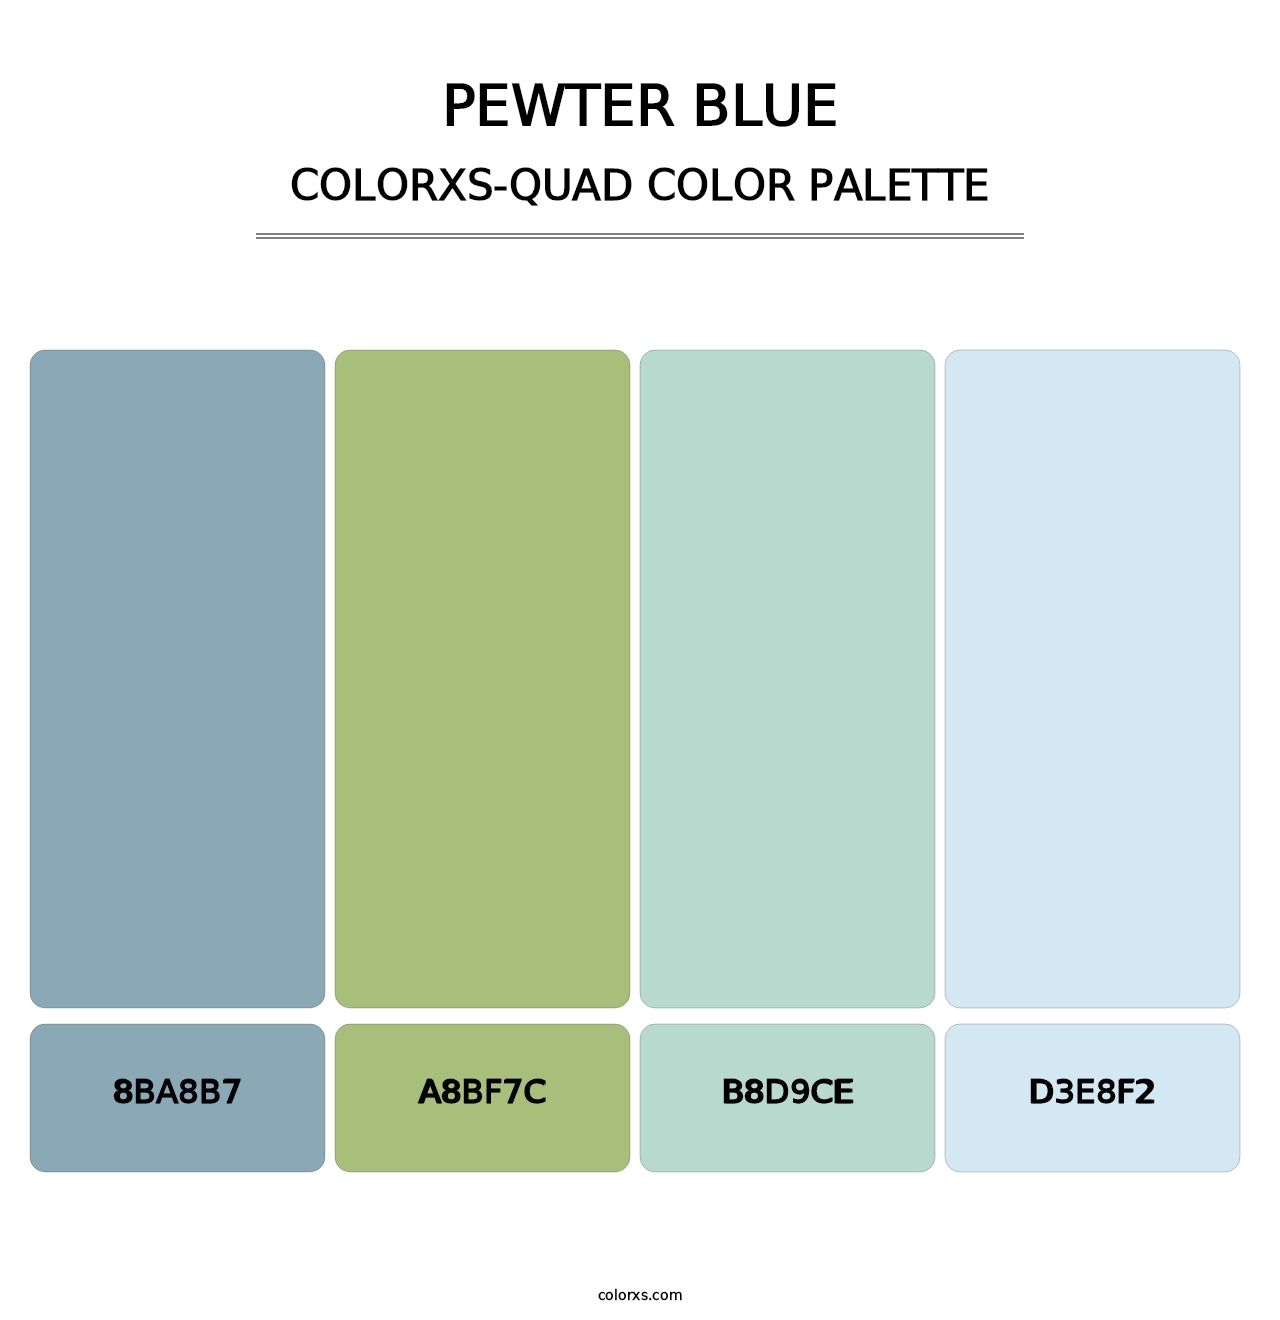 Pewter Blue - Colorxs Quad Palette